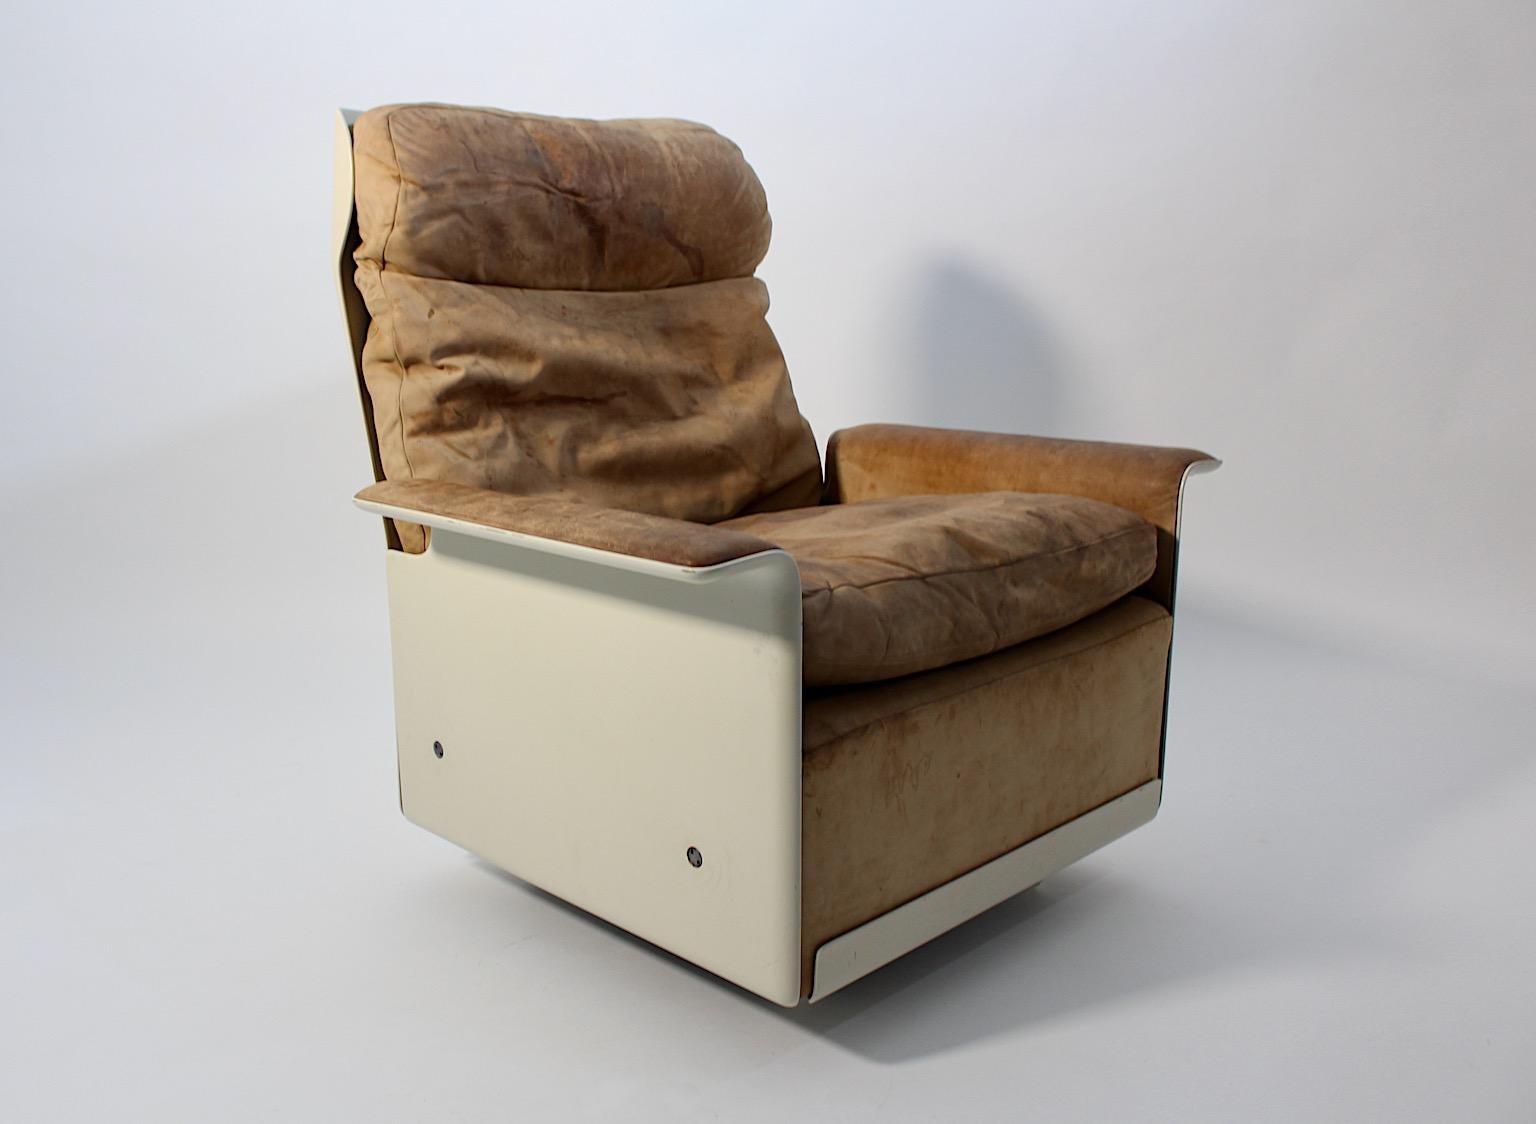 Chaise de salon vintage authentique de l'âge de l'espace en plastique et cuir dans les tons marron et ivoire par Dieter Rams, Allemagne des années 1960.
Une chaise longue vintage fantastique et autoportante conçue par le 
Design/One des années 1960